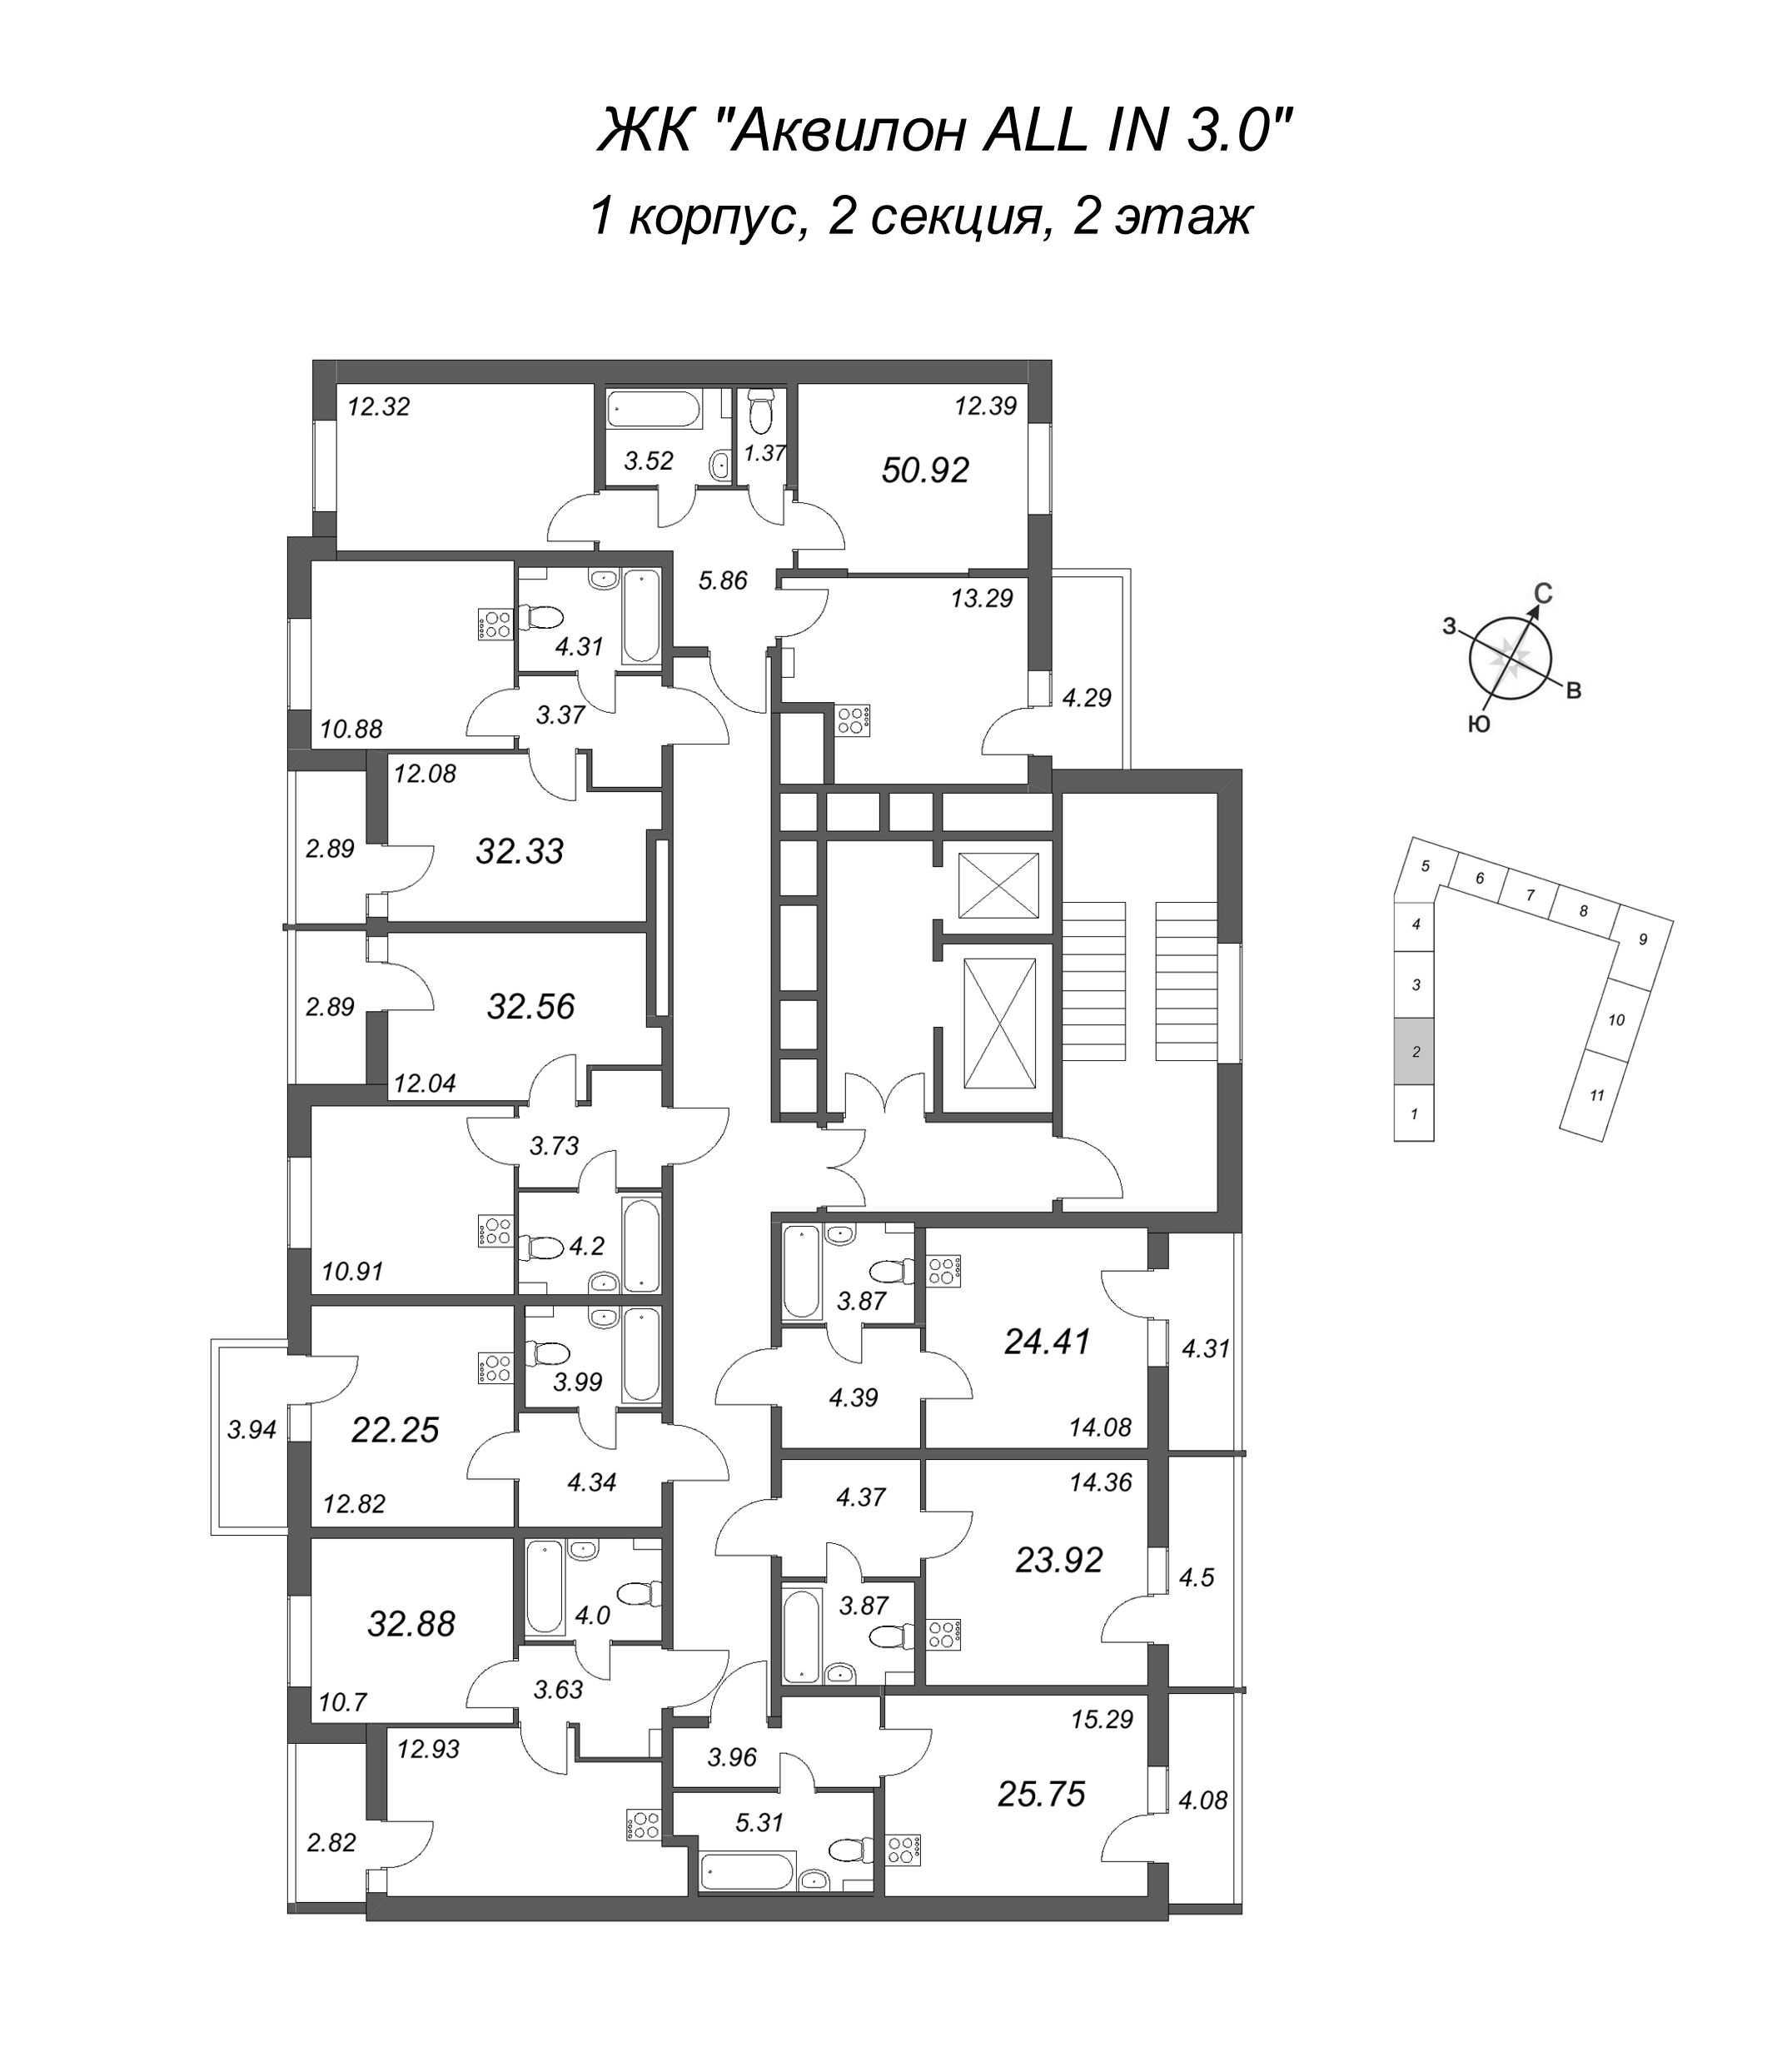 1-комнатная квартира, 32.56 м² в ЖК "Аквилон All in 3.0" - планировка этажа